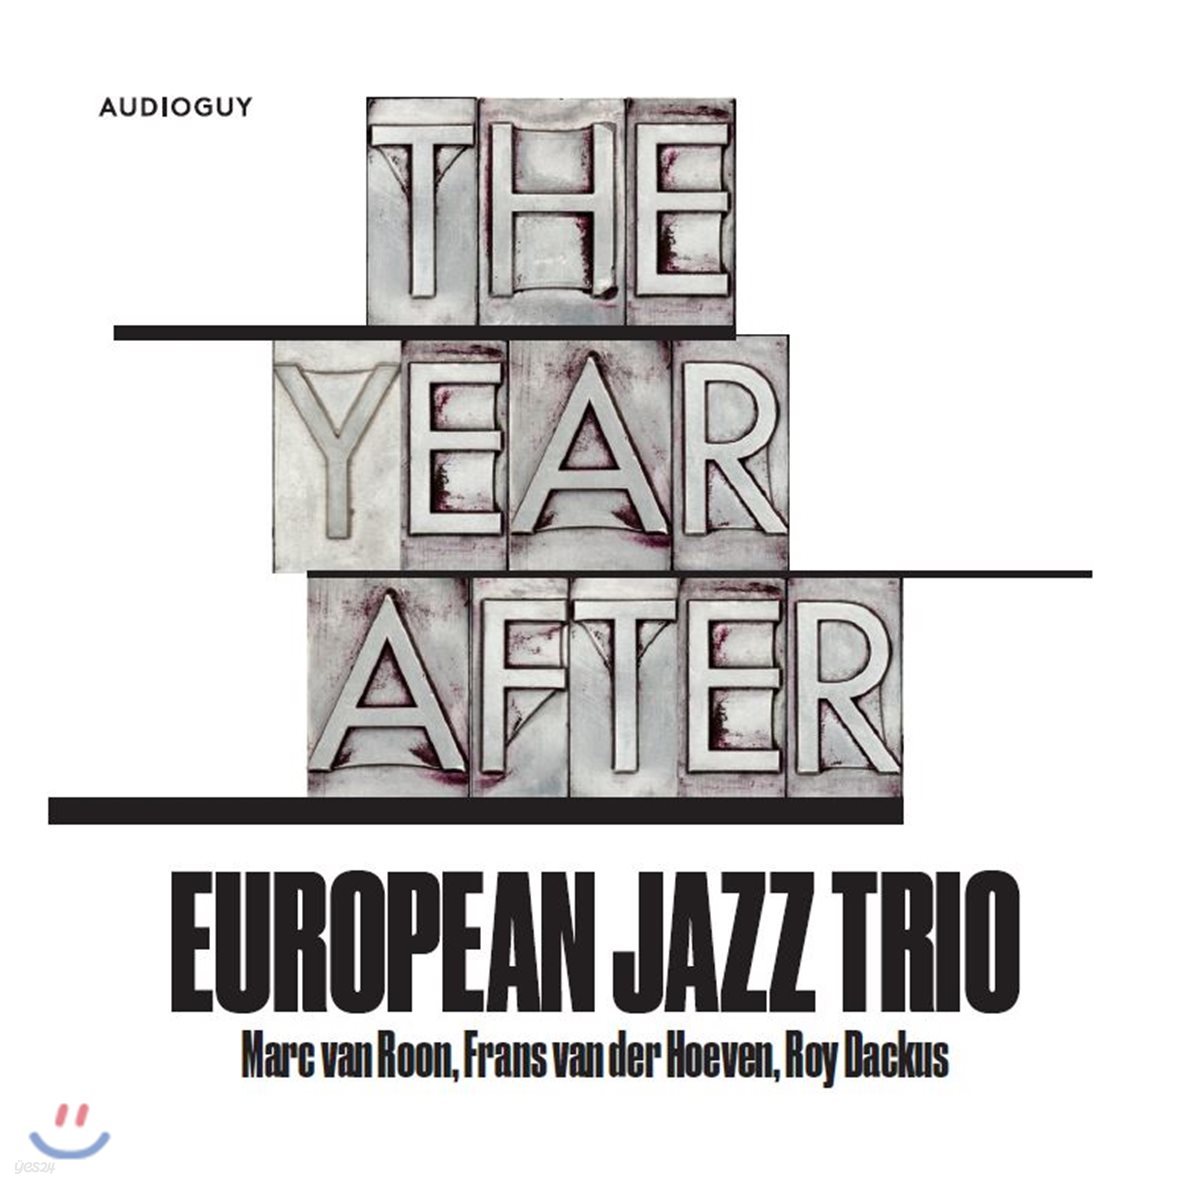 유러피안 재즈 트리오 - 일년, 그 후 (European Jazz Trio - The year after) [SACD Hybrid]